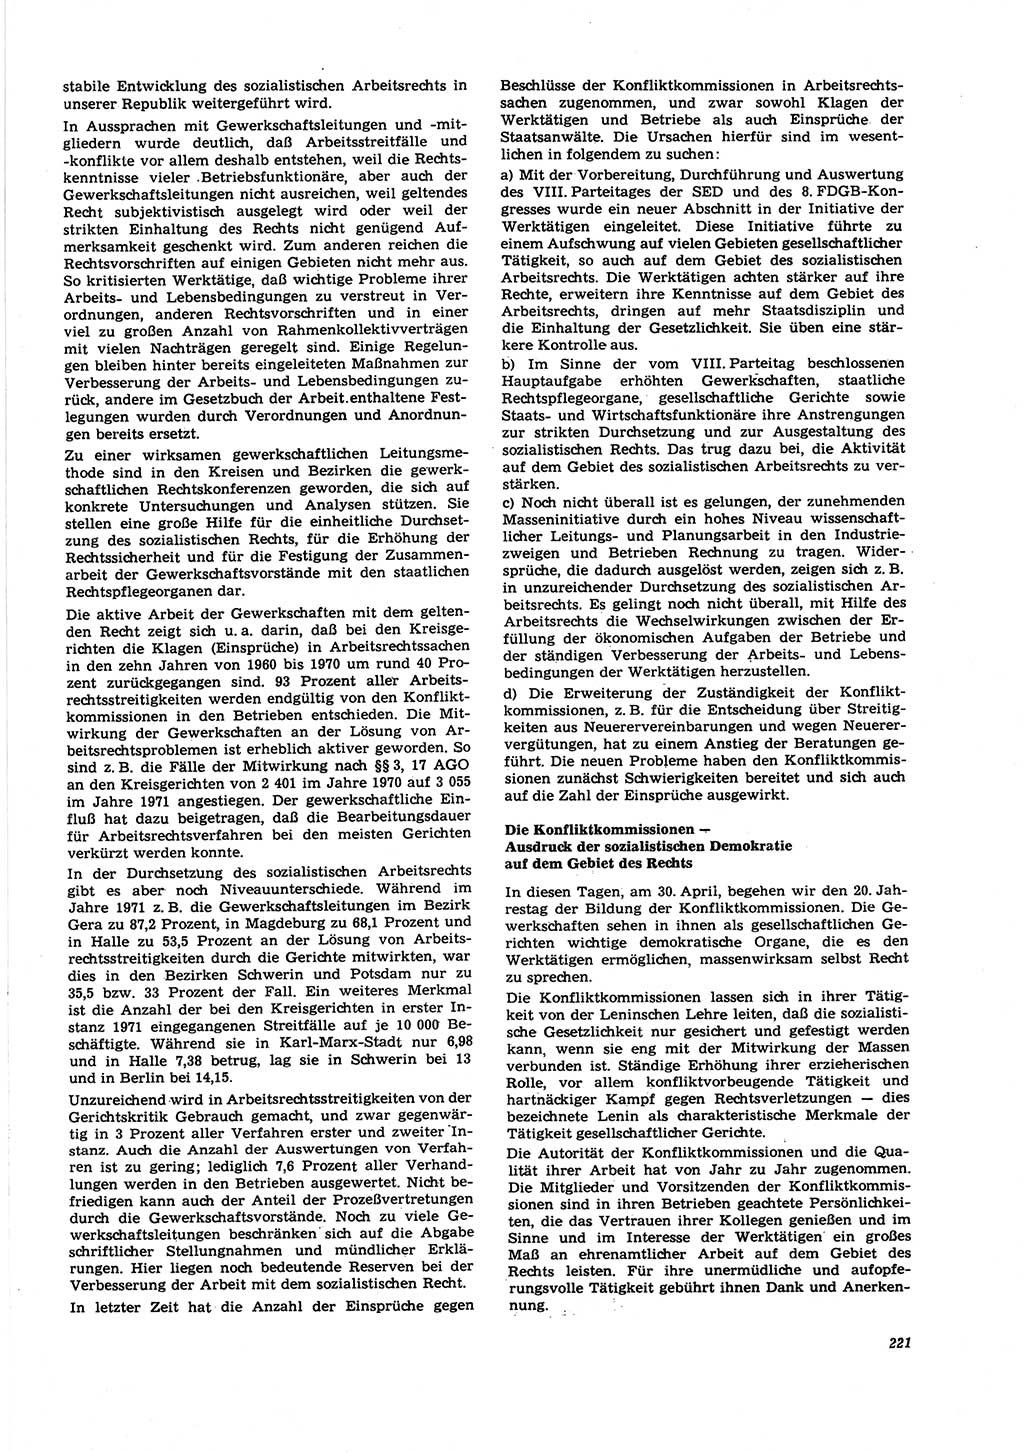 Neue Justiz (NJ), Zeitschrift für Recht und Rechtswissenschaft [Deutsche Demokratische Republik (DDR)], 27. Jahrgang 1973, Seite 221 (NJ DDR 1973, S. 221)